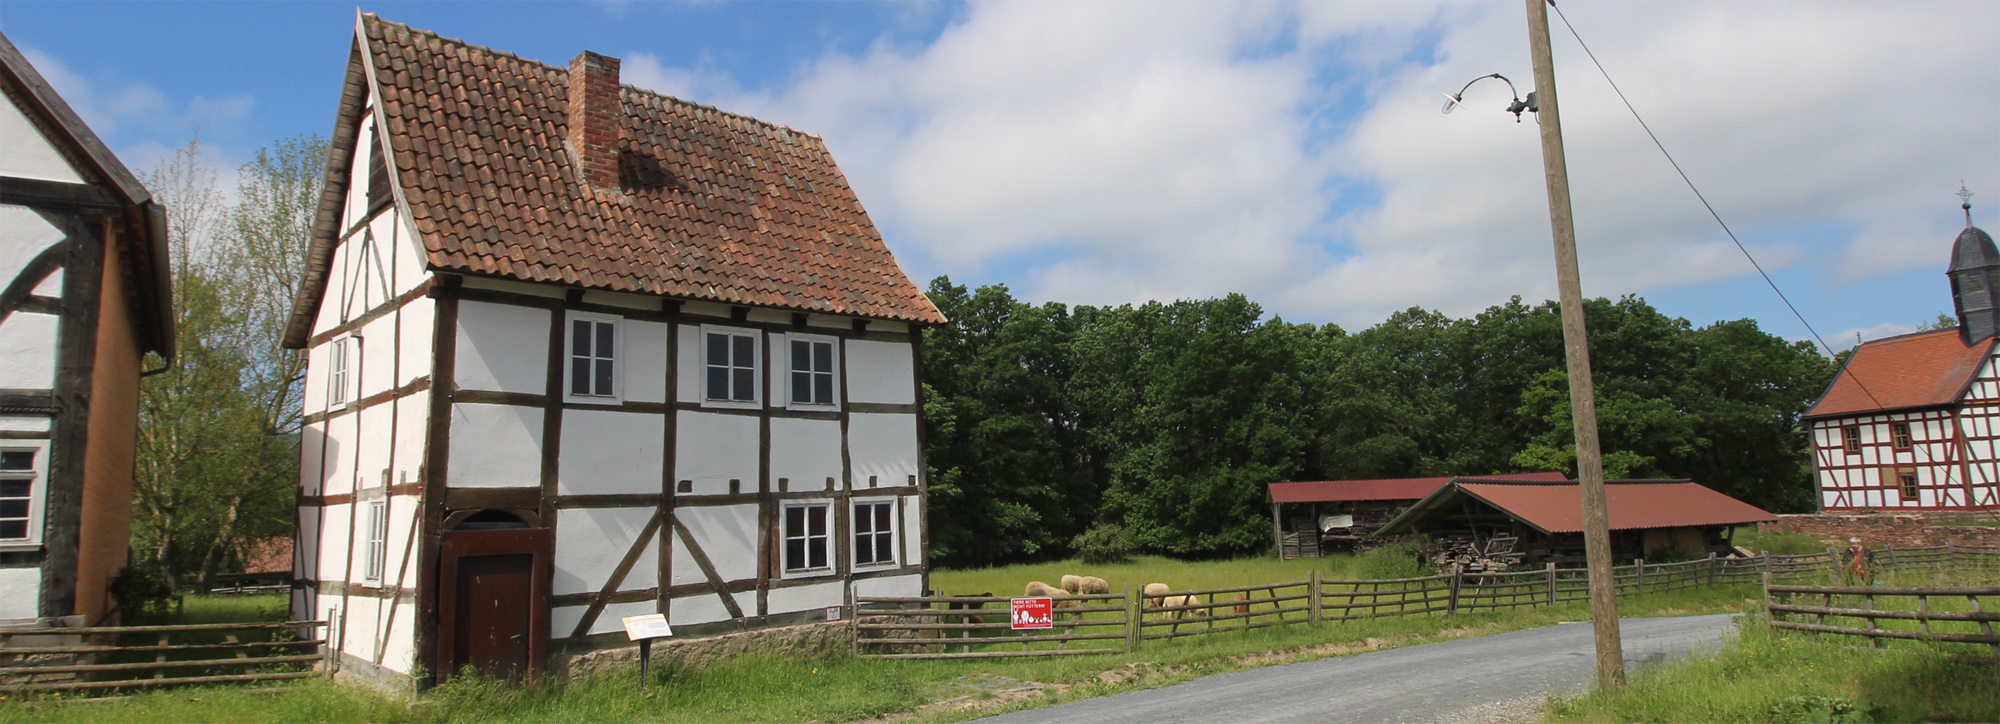 Ein kleines Fachwerkhaus mit Ziegeldach, rechts daneben eine große Wiese mit Schafen.